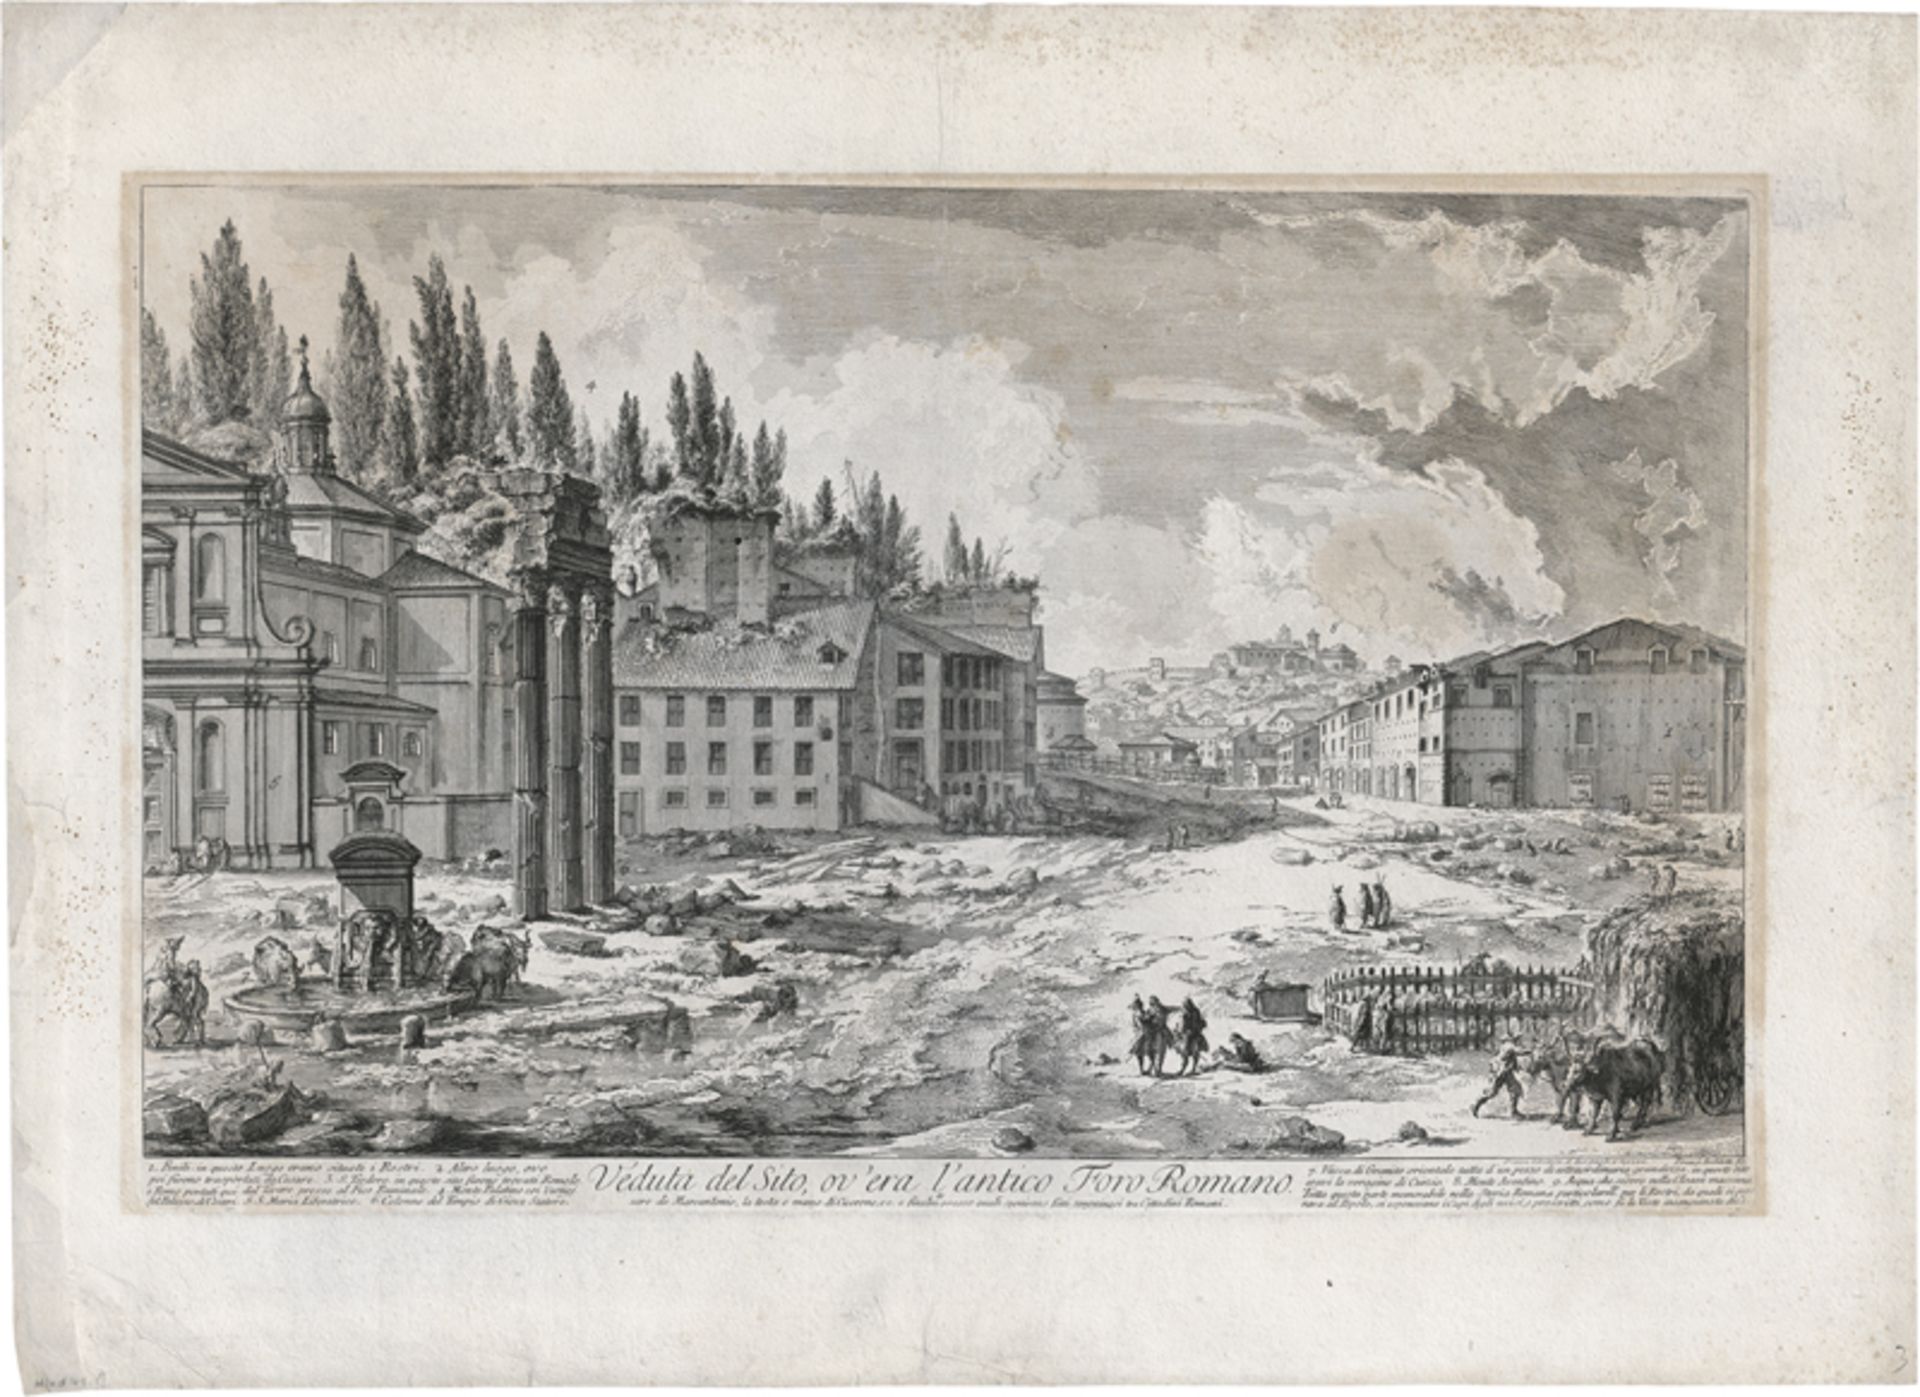 Piranesi, Giovanni Battista: Veduta del Sito, ov'era l'antico Foro Romano